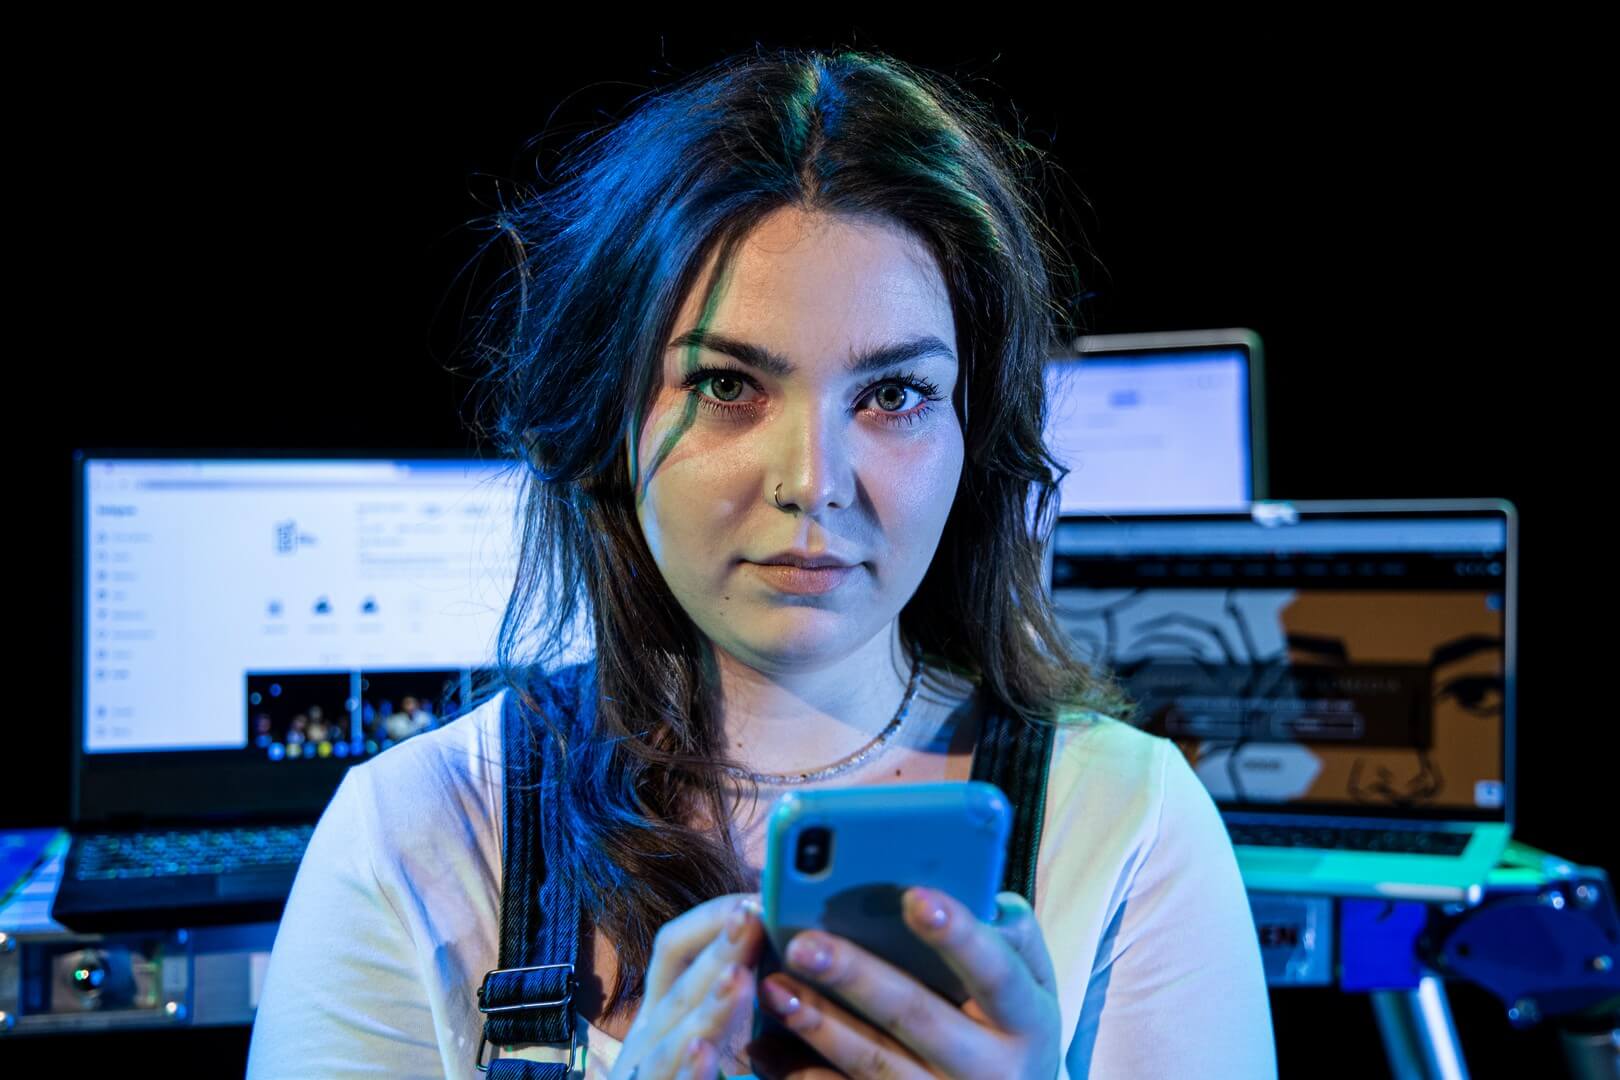 zdjęcie portretowe, kobieta w białej bluzce, z telefonem w reku, na drugim planie kilka włączonych laptopów.